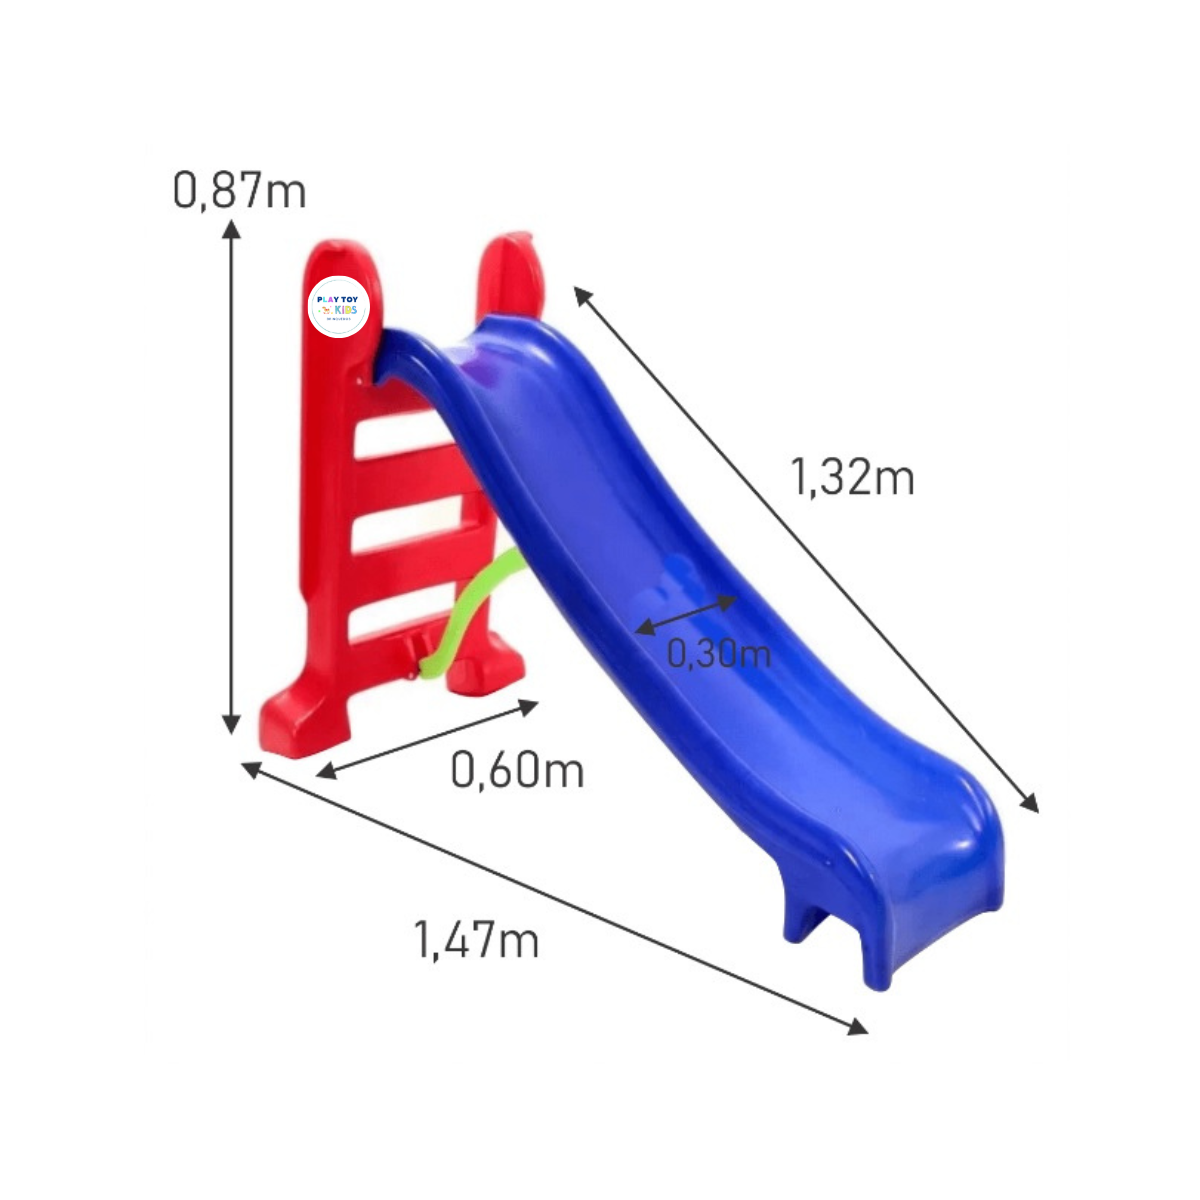 Escorregador medio infantil 3 degraus azul com vermelho max confot - 2